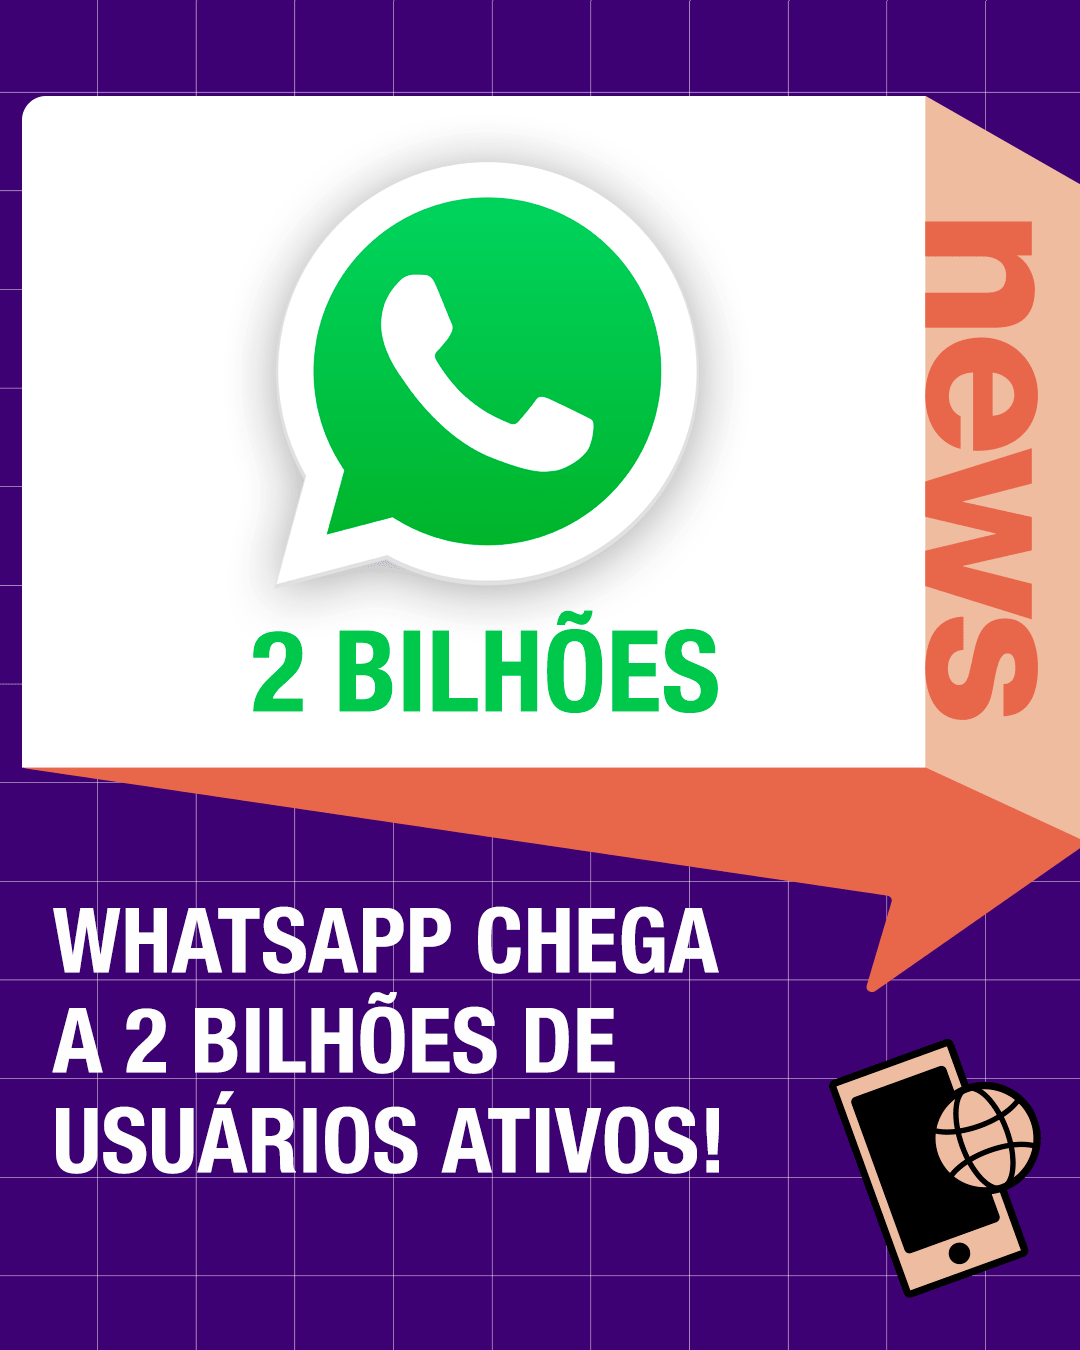 WhatsApp chega a 2 BILHÕES de usuários ativos!